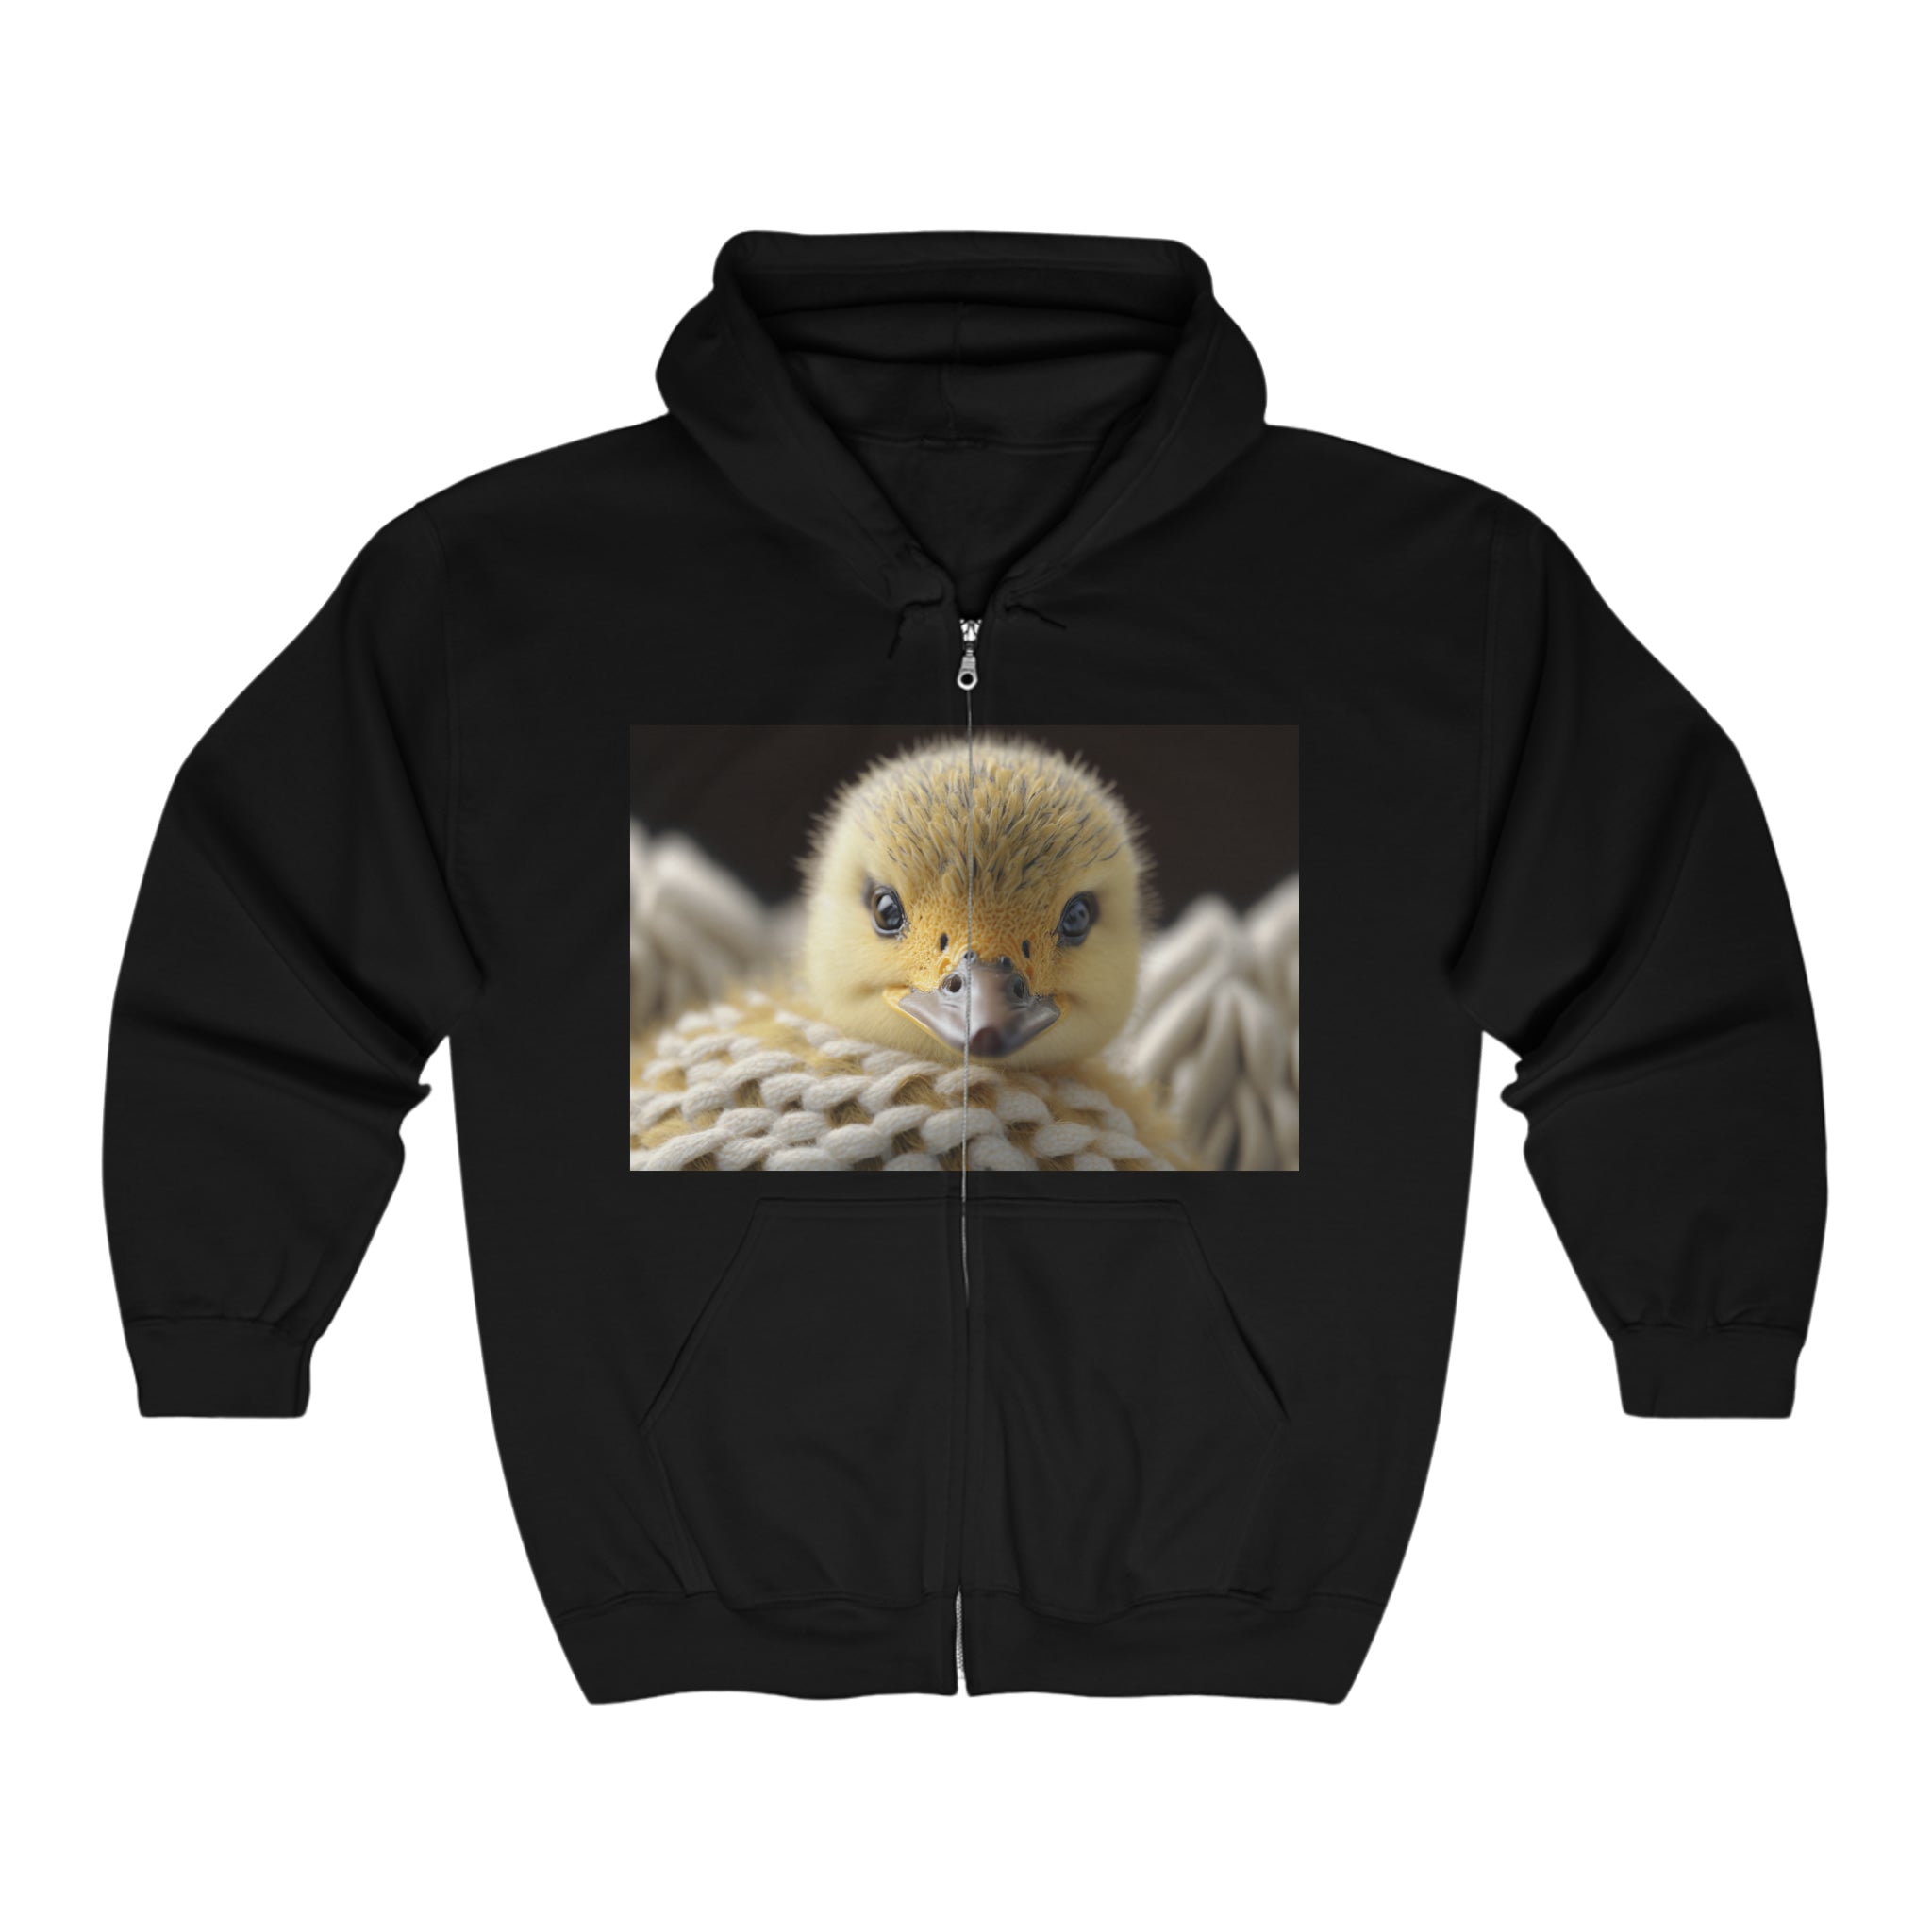 Unisex Heavy Blend™ Full Zip Hooded Sweatshirt - Baby Animals - Duck